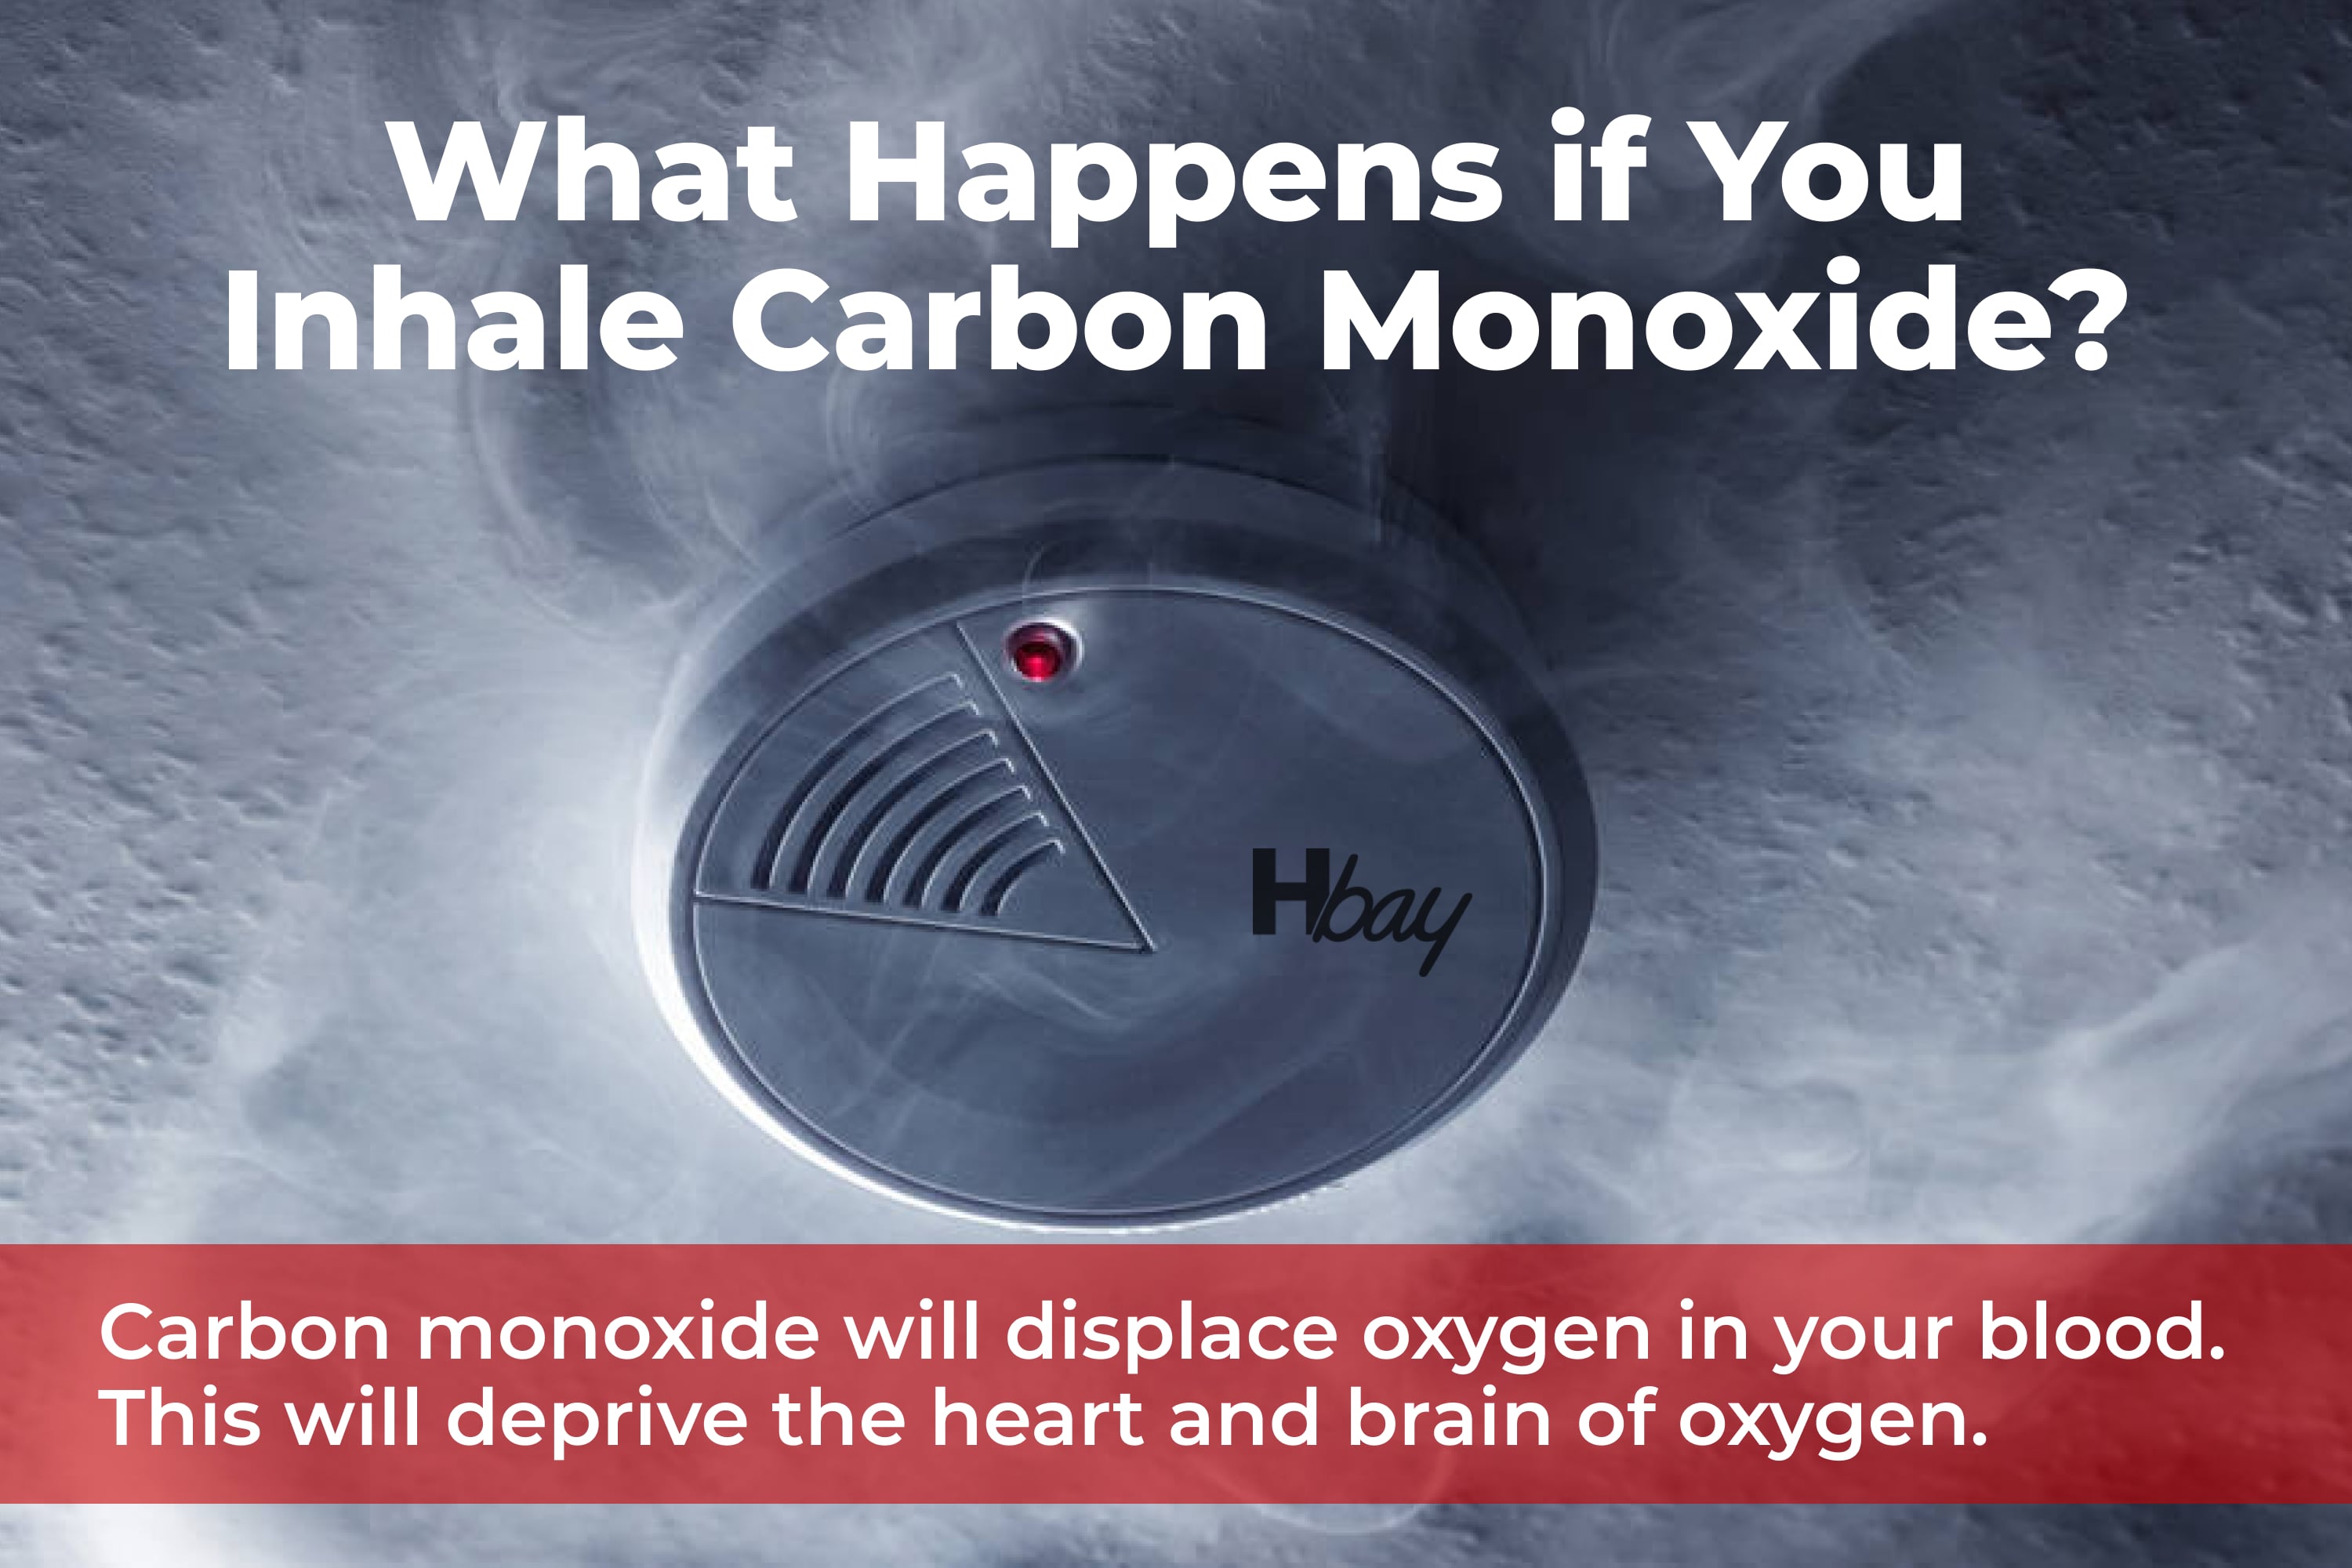 What happens if you inhale carbon monoxide